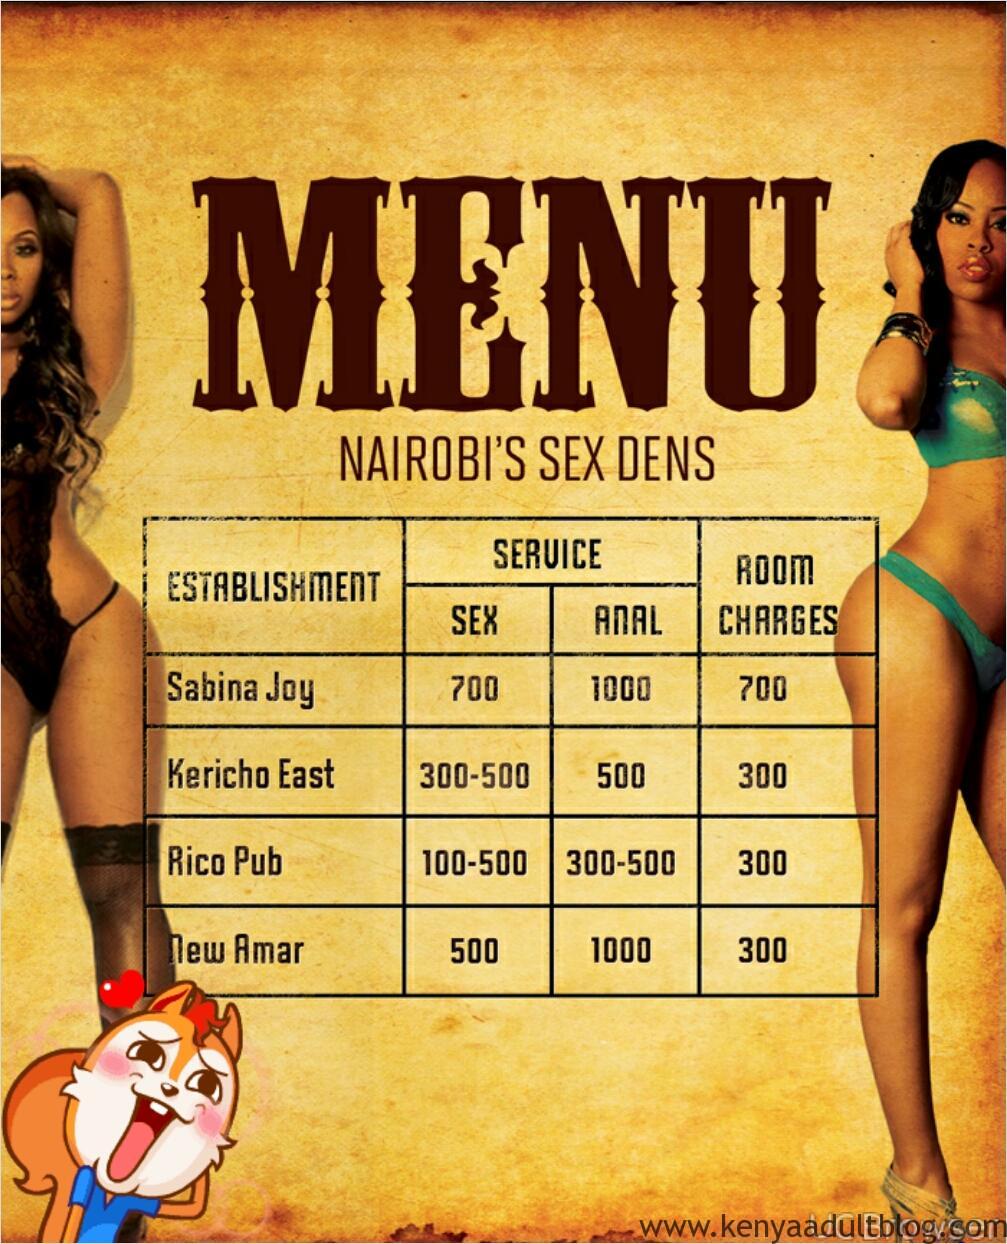 Kenyan Prostitutes Nude